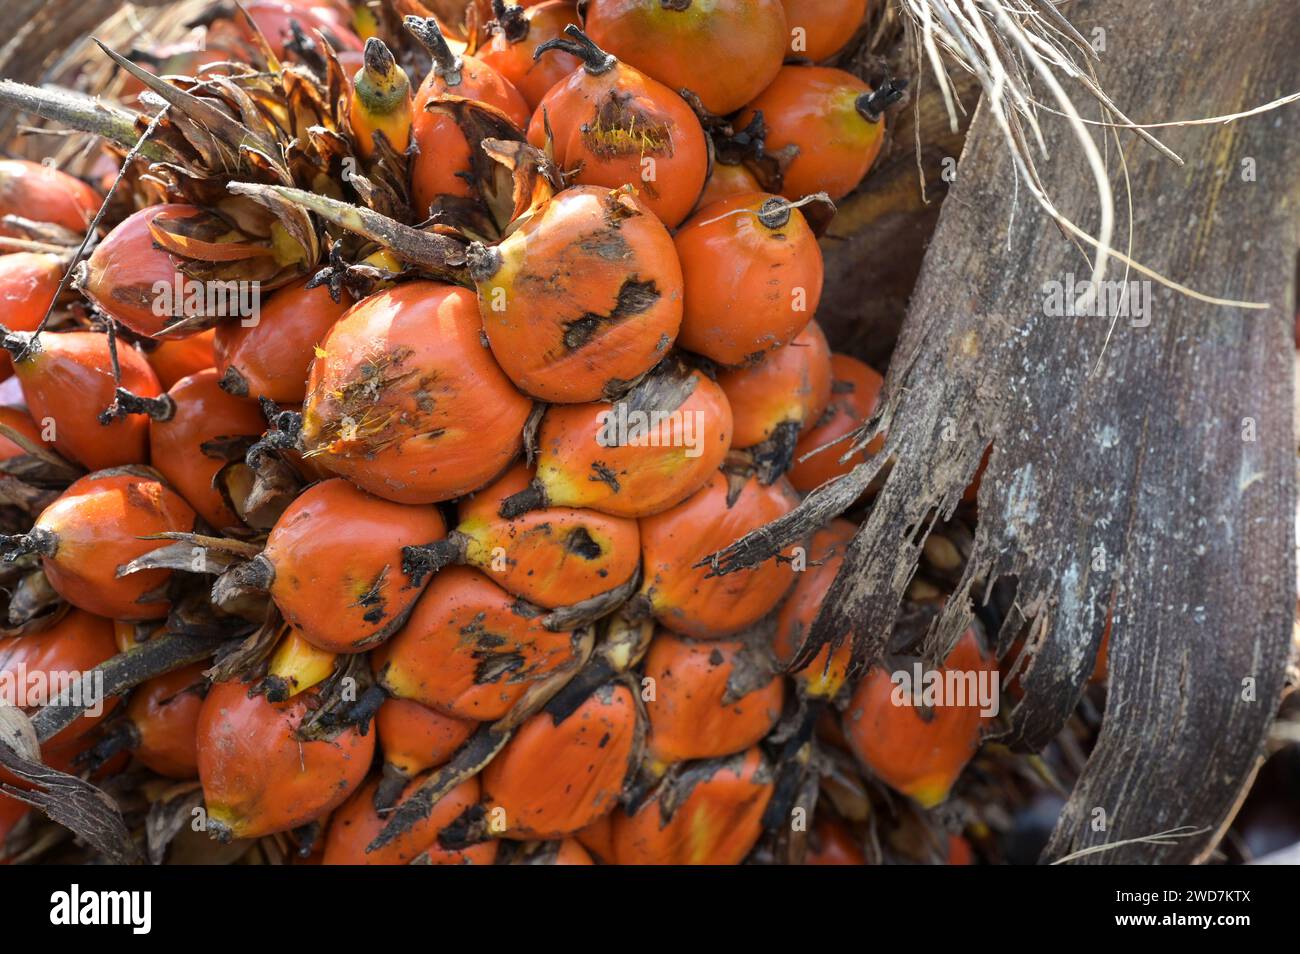 GHANA, Nkawkaw, coltivazione e raccolta dell'olio di palma, frutto dell'olio di palma con chicchi / GHANA, Ölpalm Anbau und Ernte, Palmöl Früchte mit Kernen Foto Stock